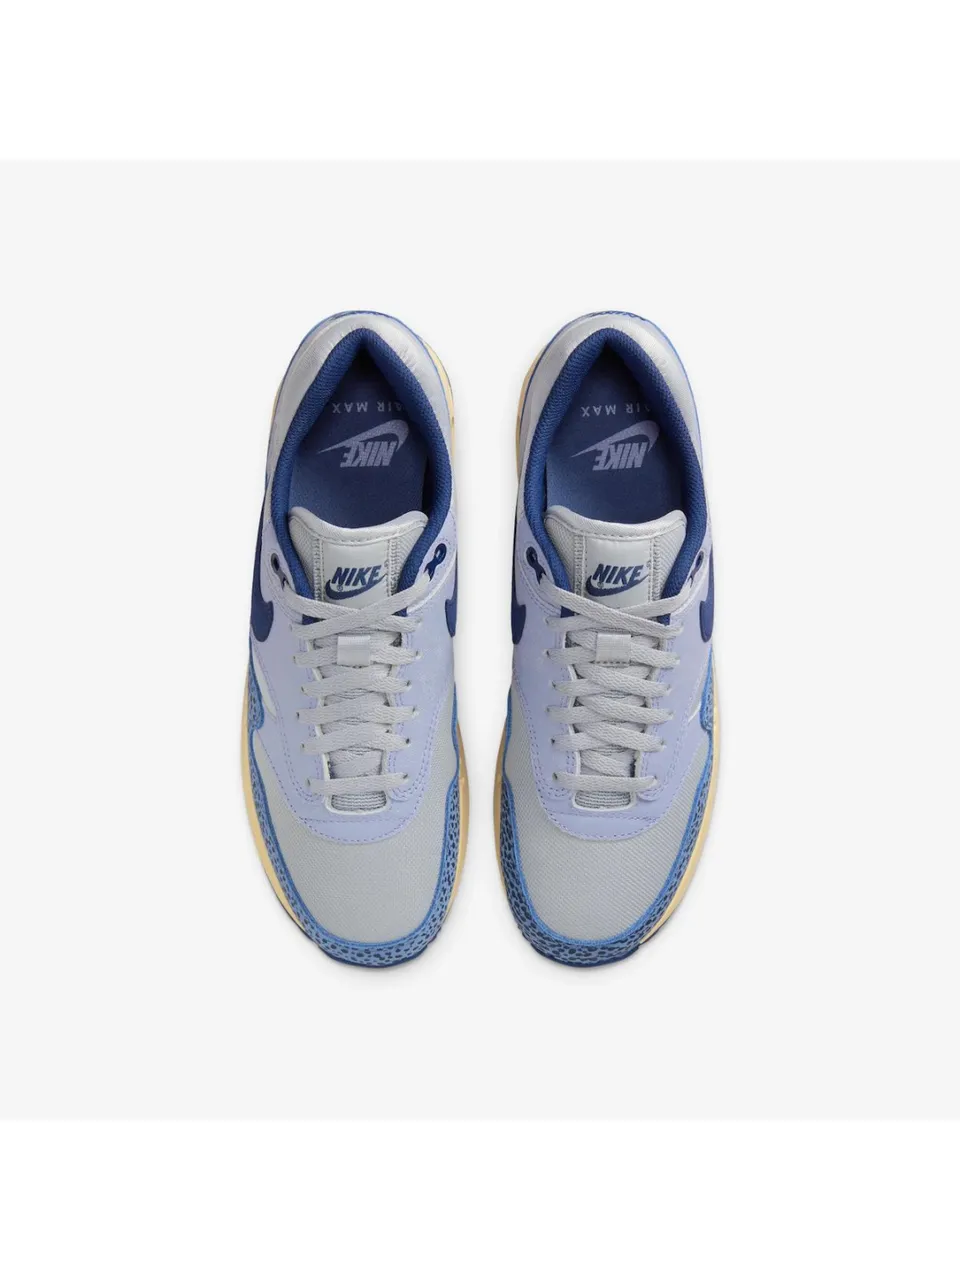 Nike Air Max 1 '86 Premium Blue Safari sneakers